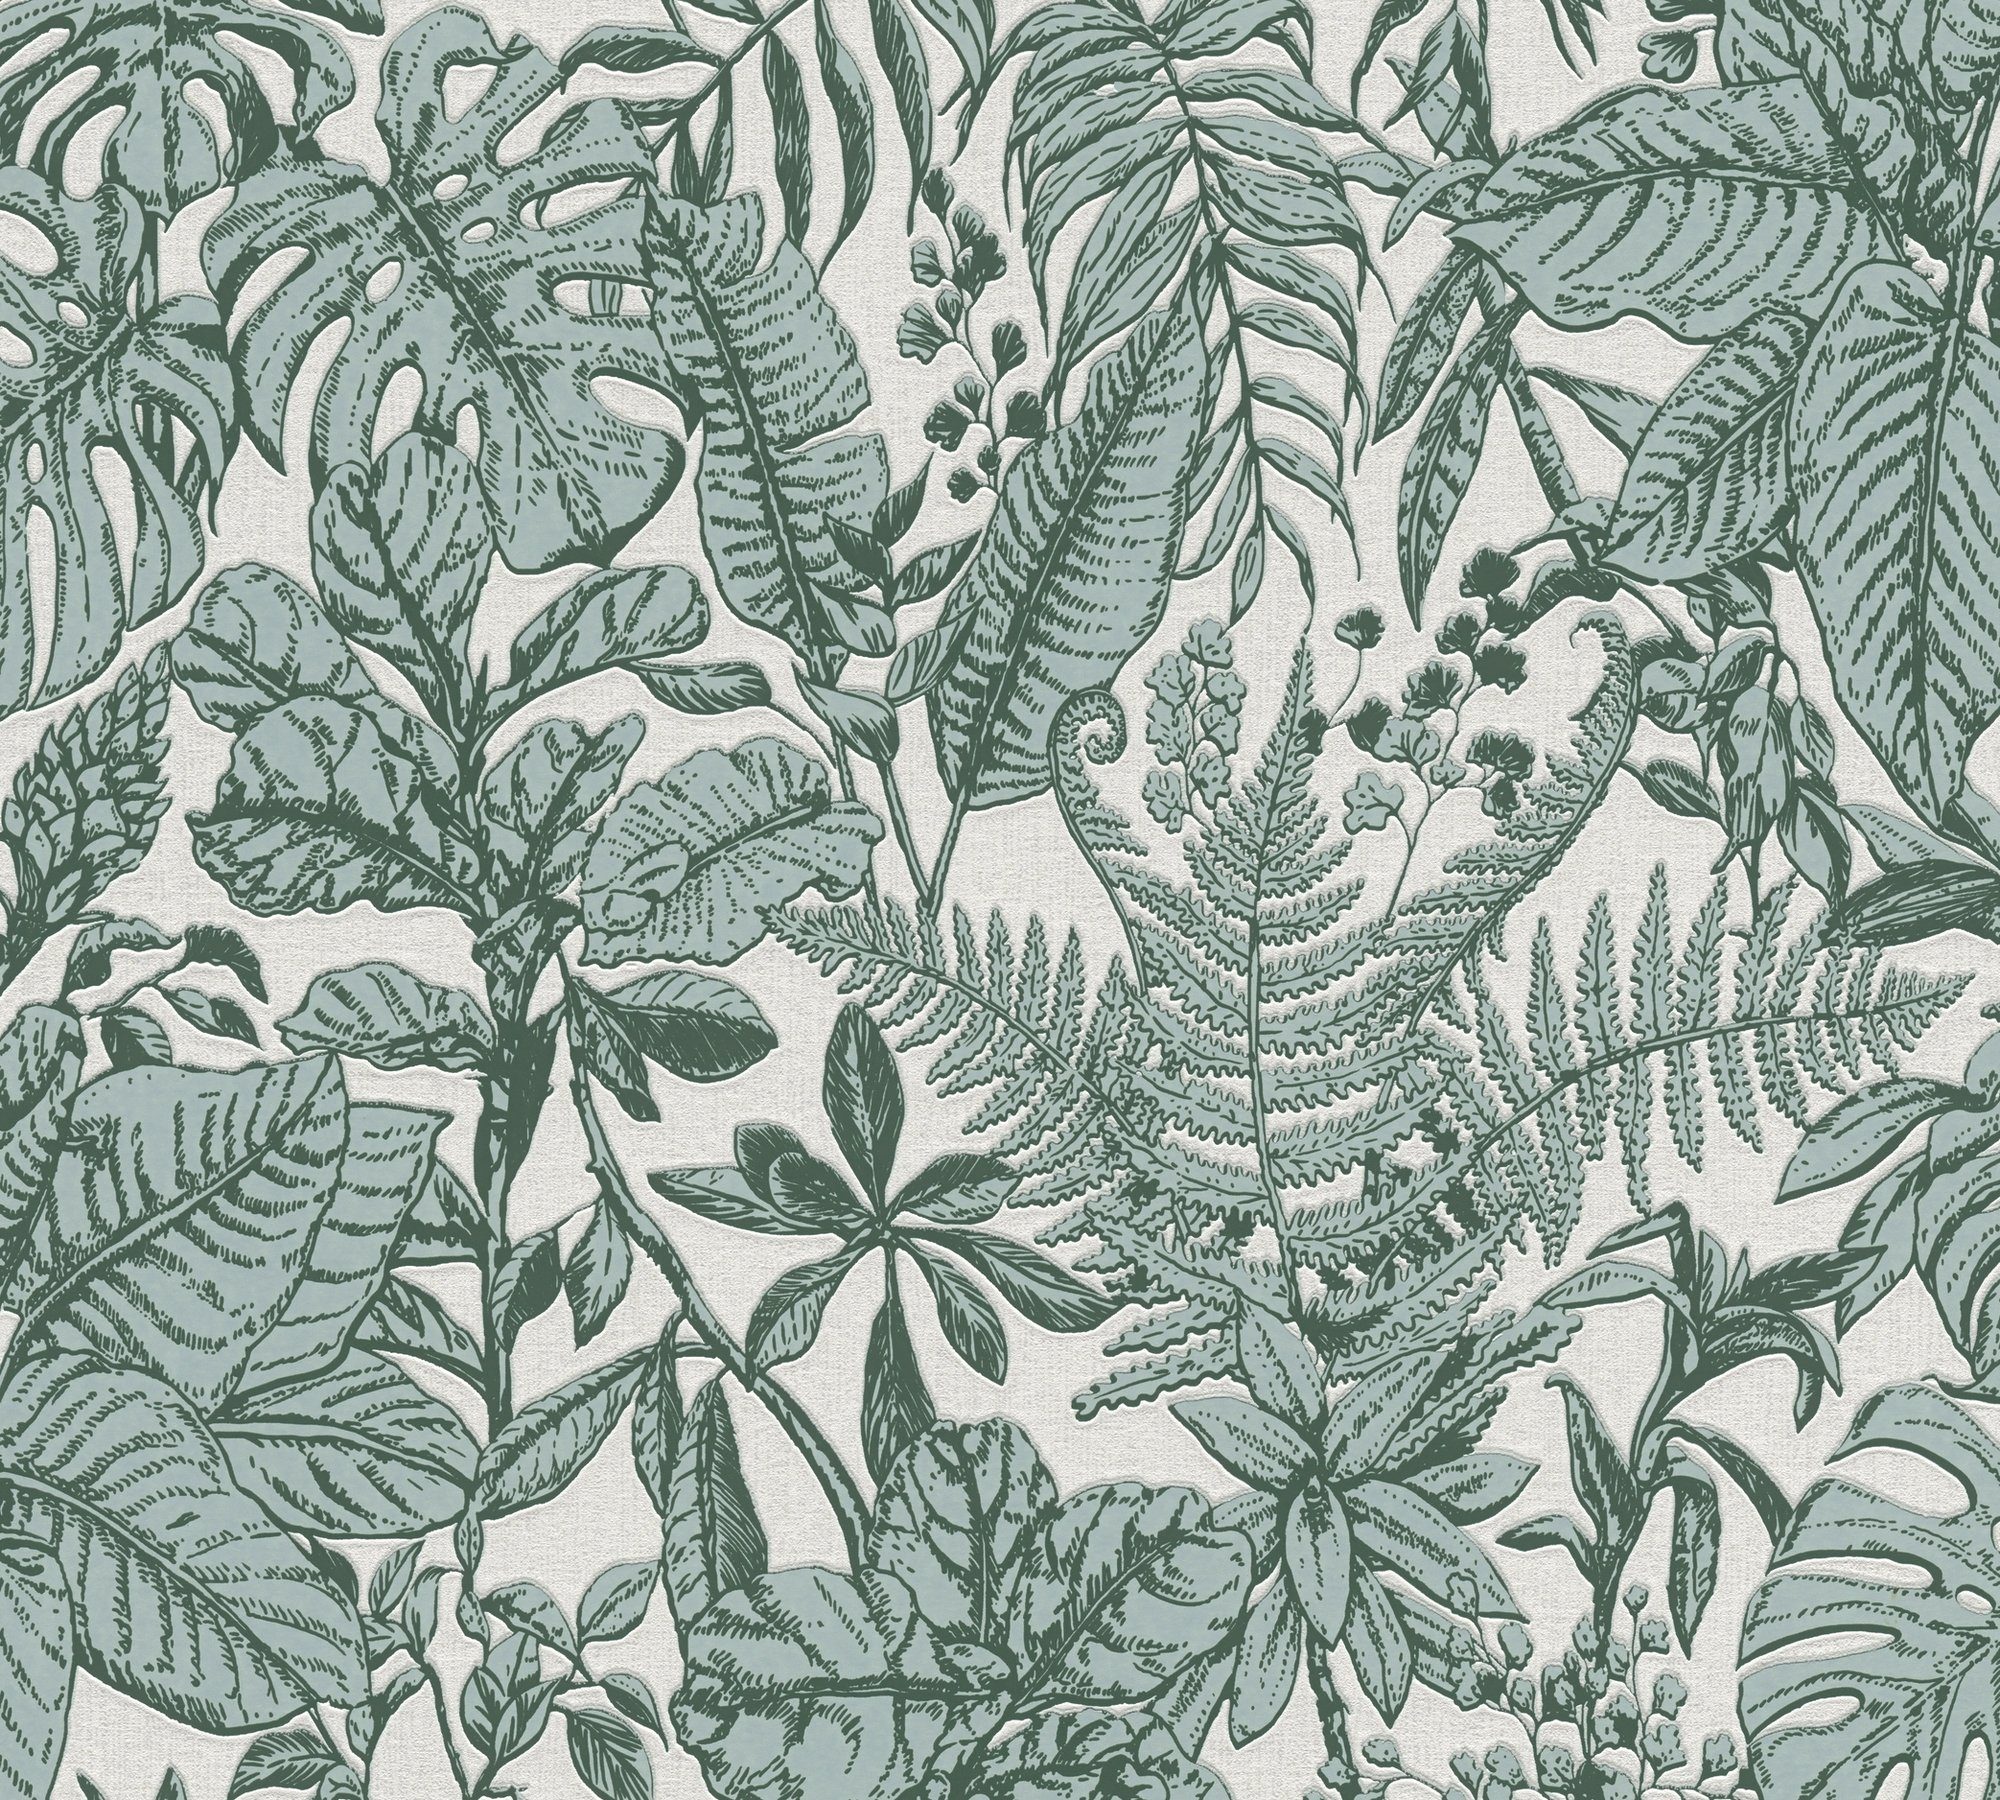 Dschungel Tapete Vliestapete tropisch, botanisch, Dschungel, weiß/grau/tannengrün Daniel Designertapete Hechter